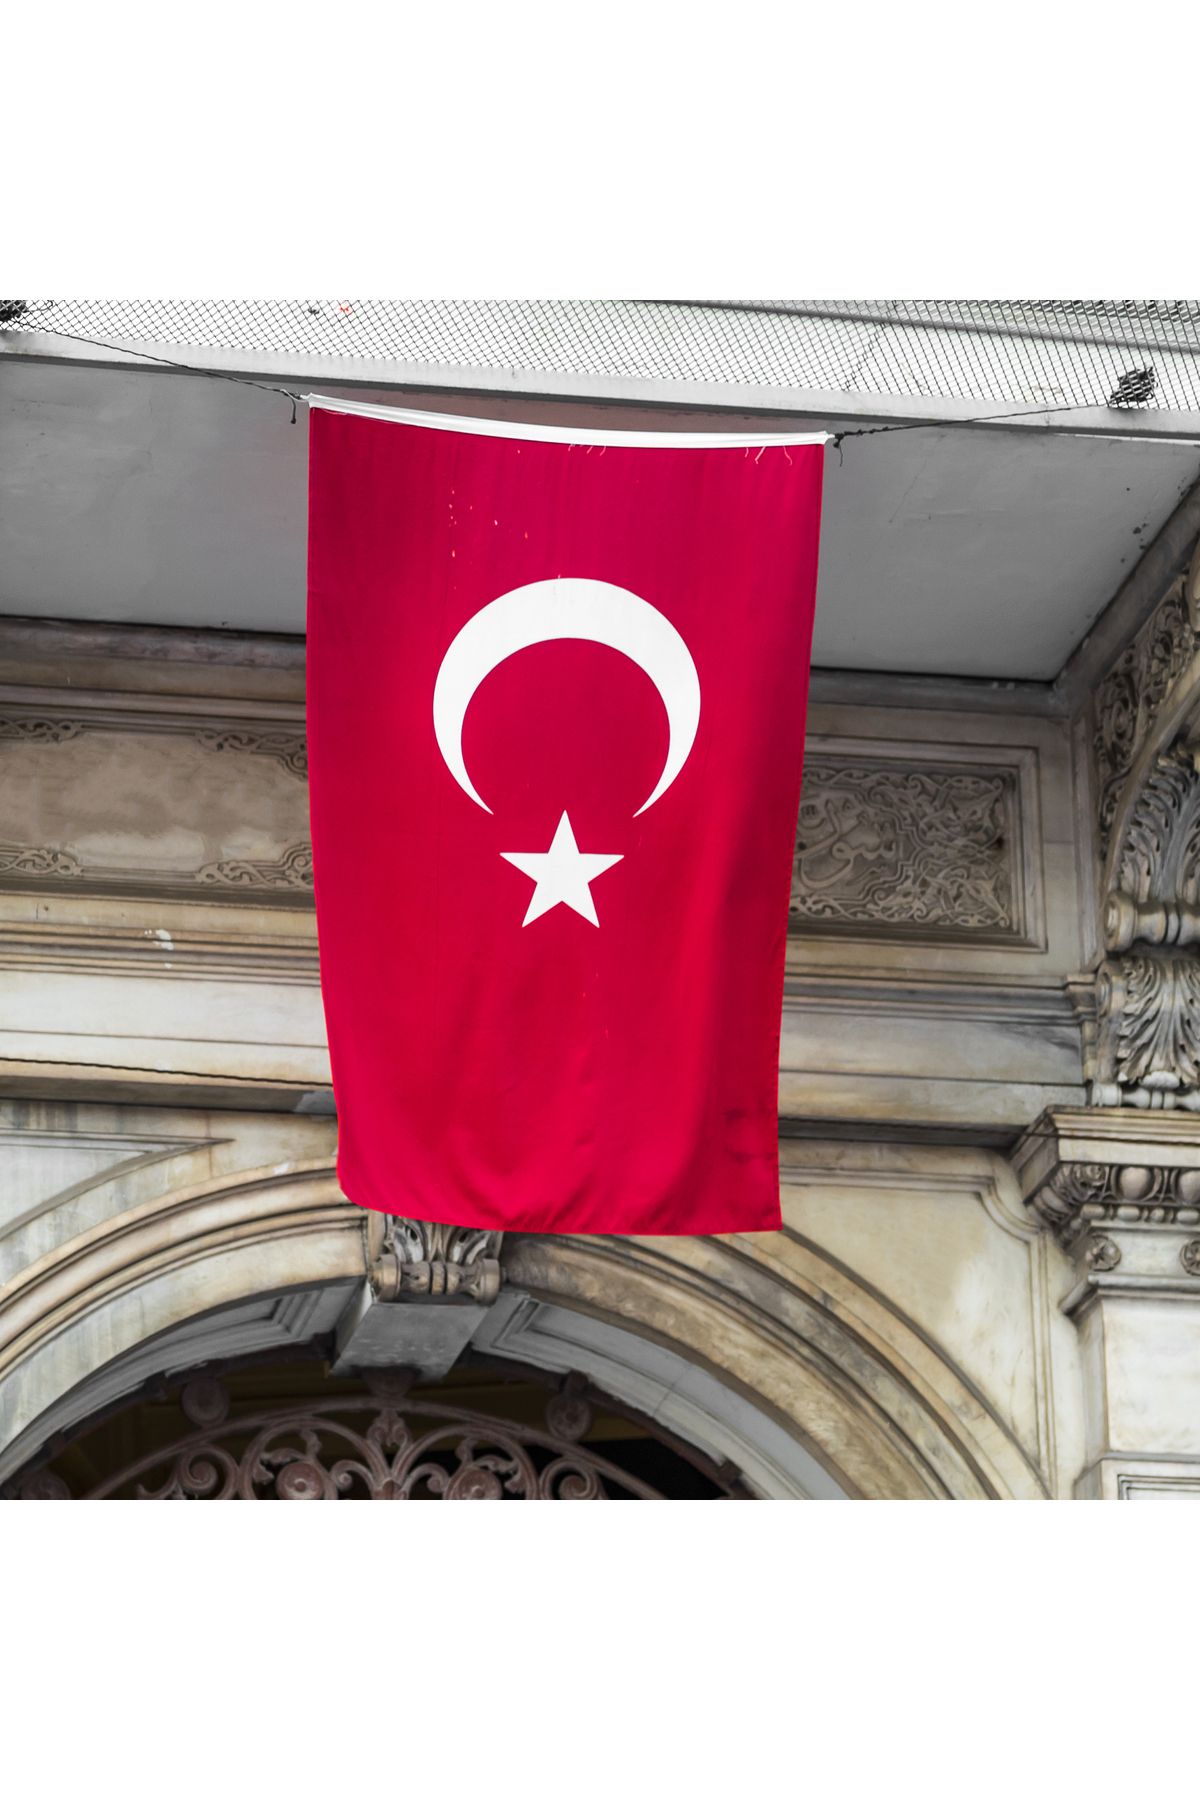 Türk Bayrağı 60x90 cm Ebatında Kaliteli Kumaş Türk Bayrağı Al Bayrak